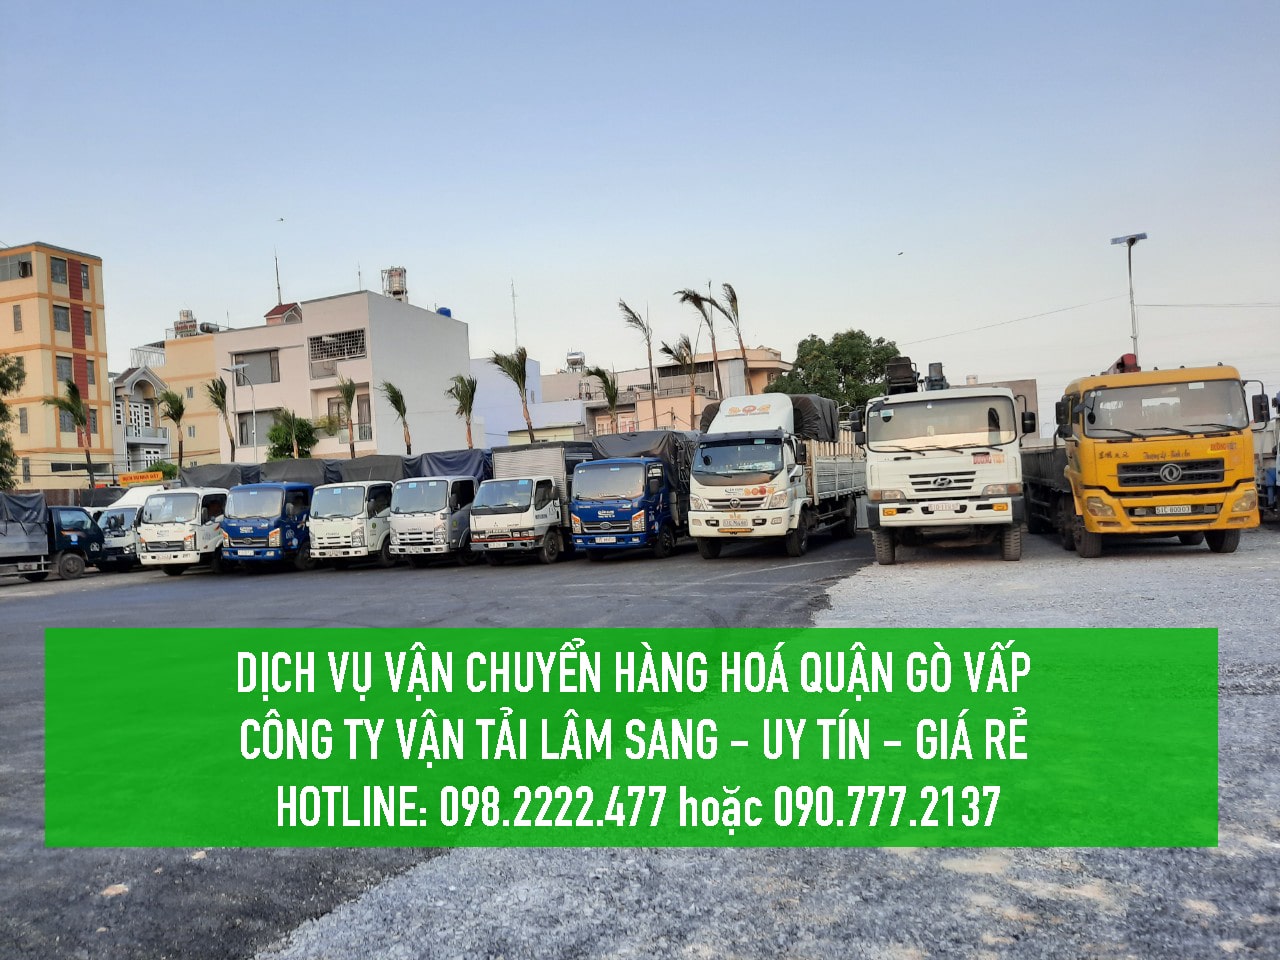 Dịch vụ vận chuyển hàng hoá Quận 9 – Vận tải Lâm Sang